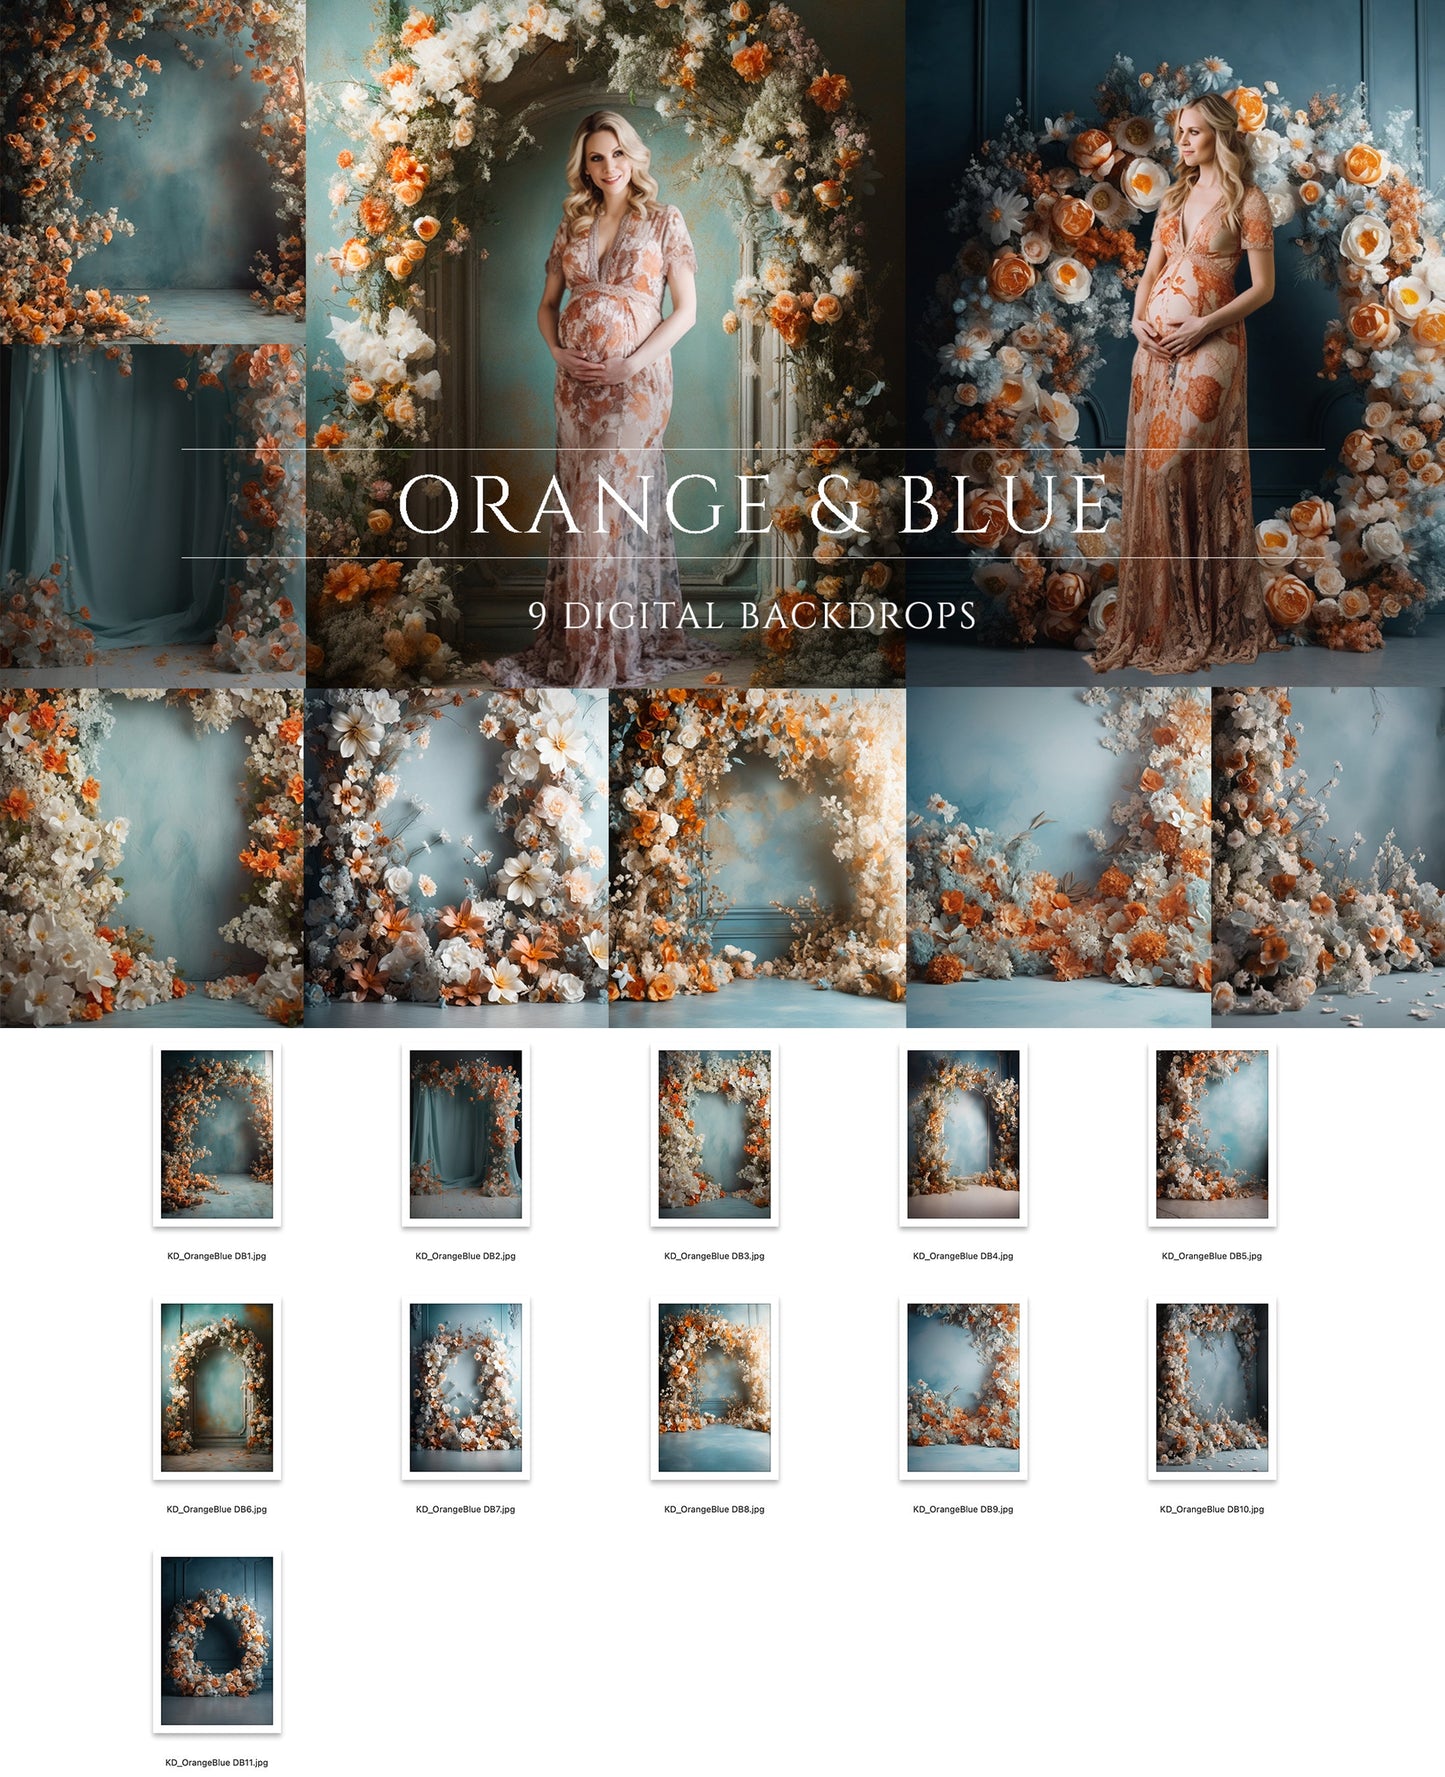 9 Orange and Blue Blossom Floral Digital Backdrops